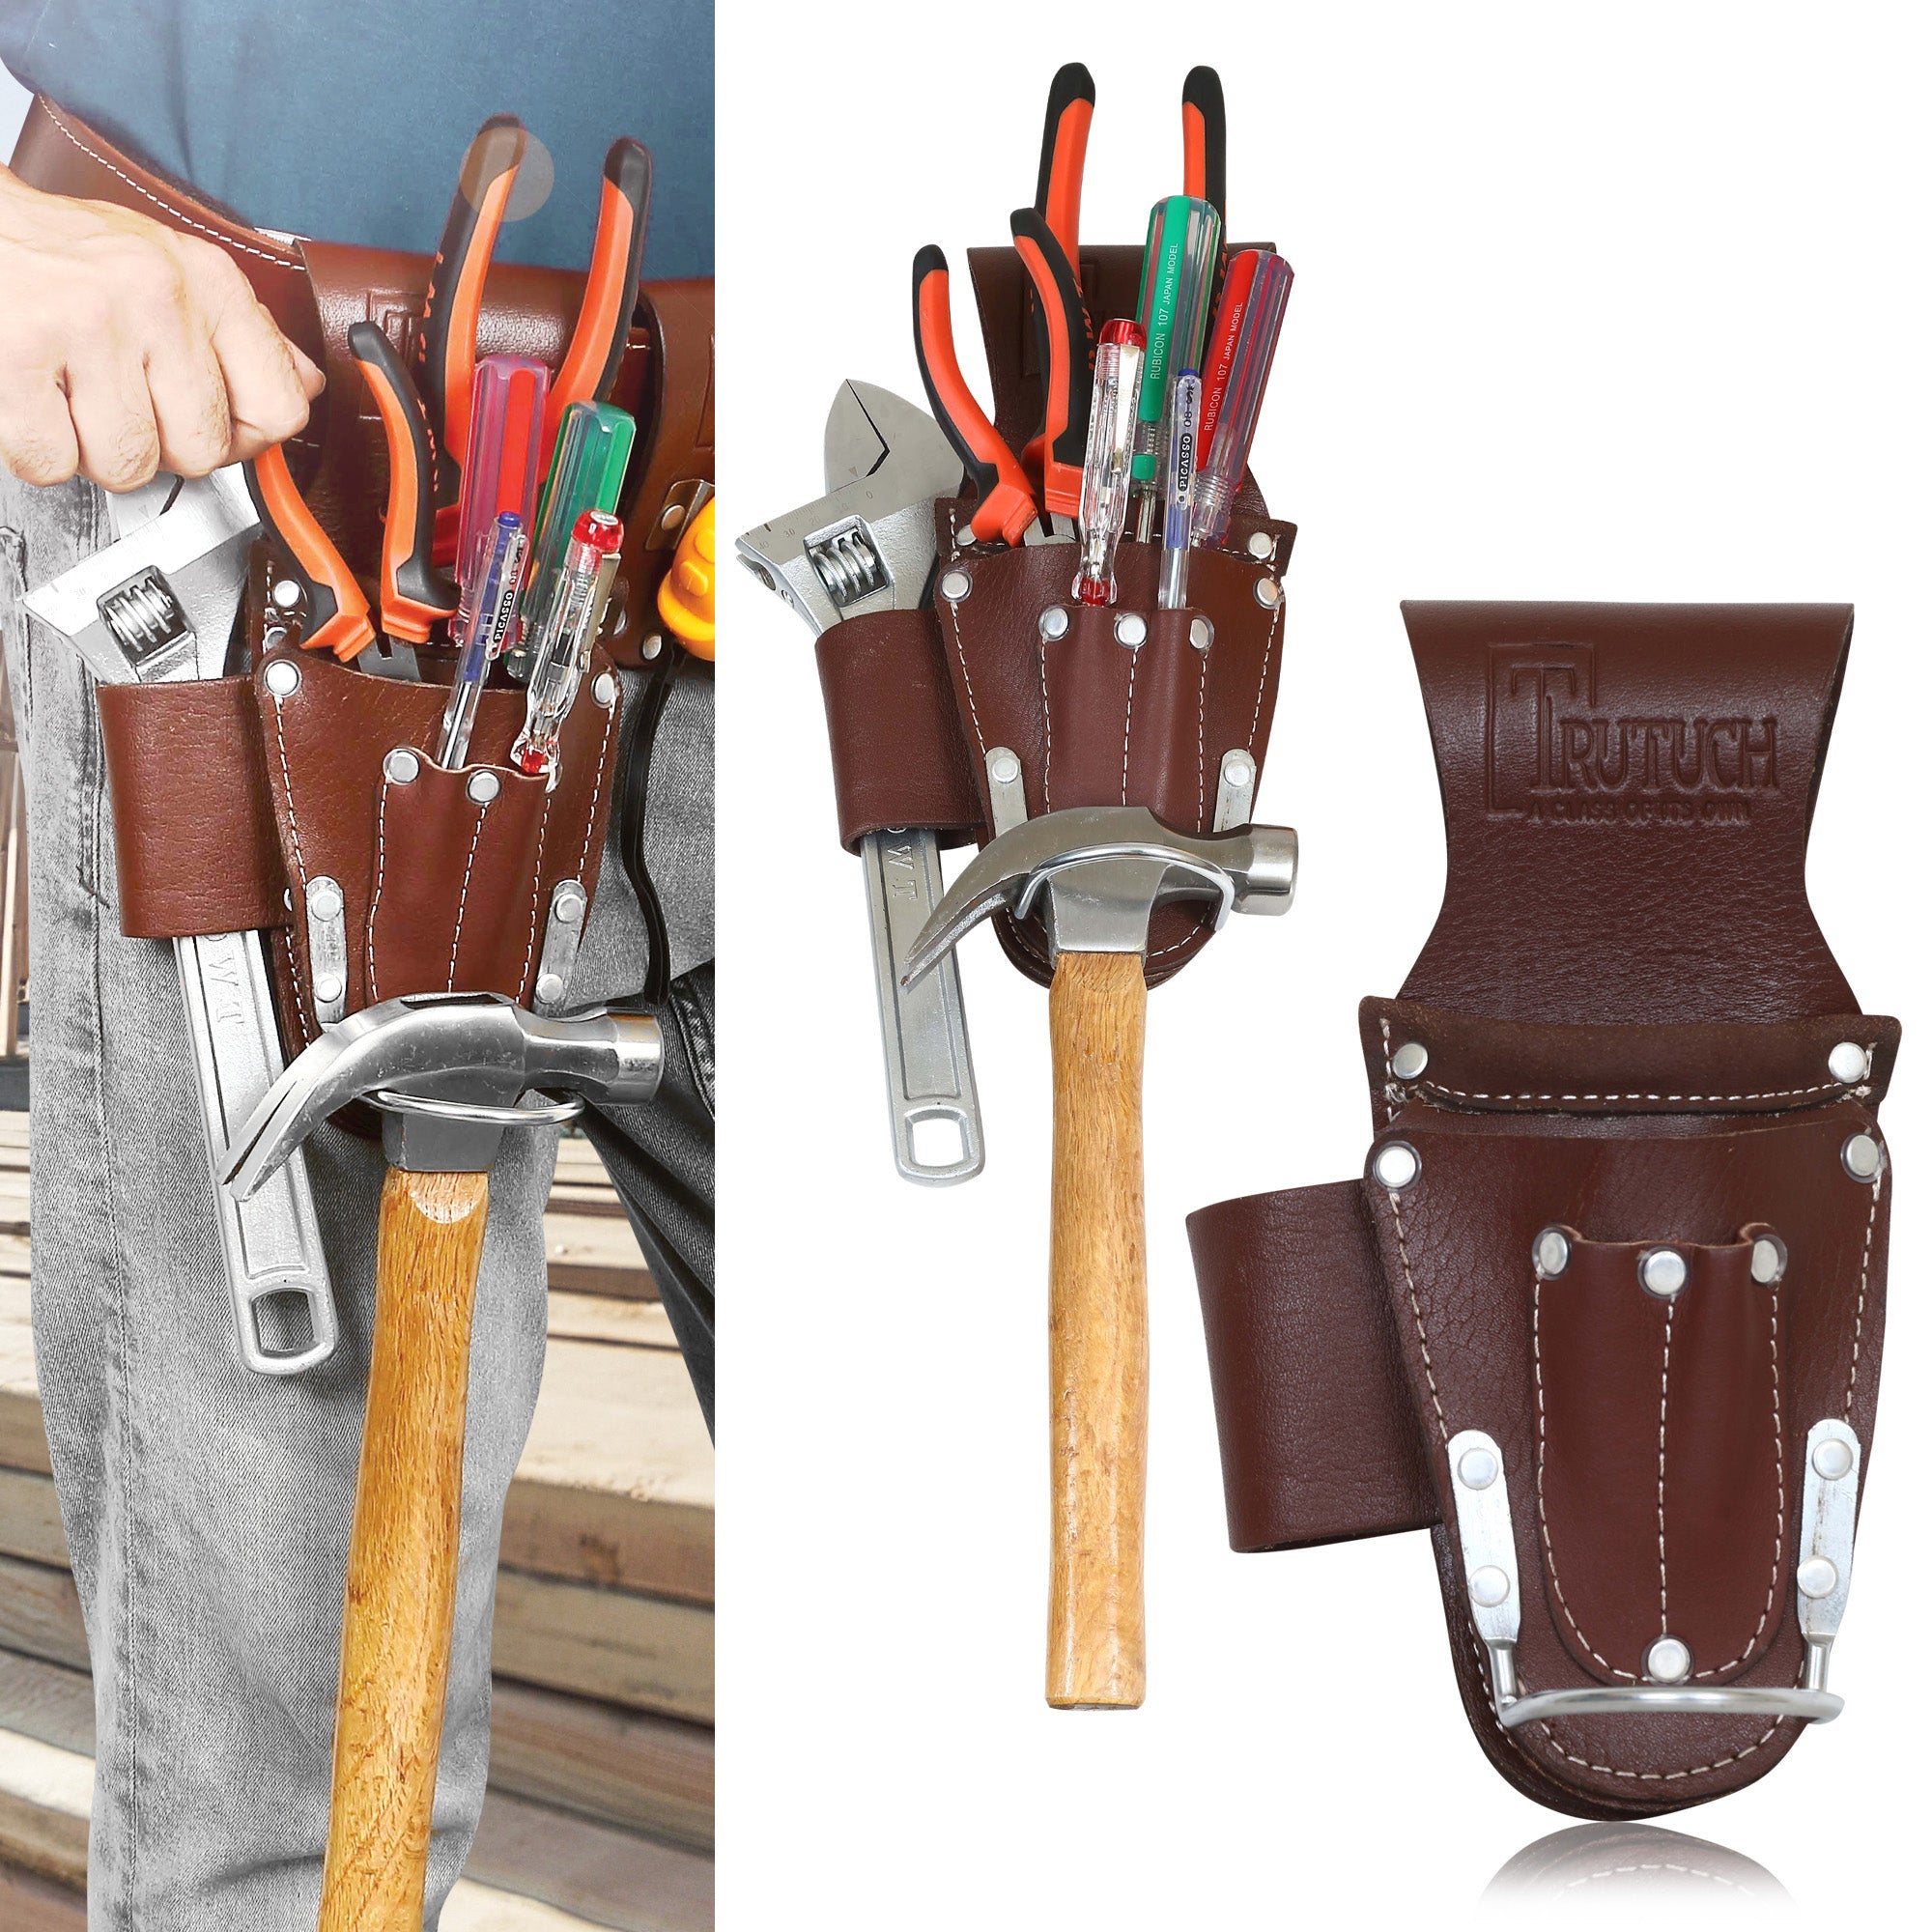 Trutuch Leather Hammer Holder, Hammer Holster for Carpenter, Small Tool Holders, Plier Holder, TT-620-H